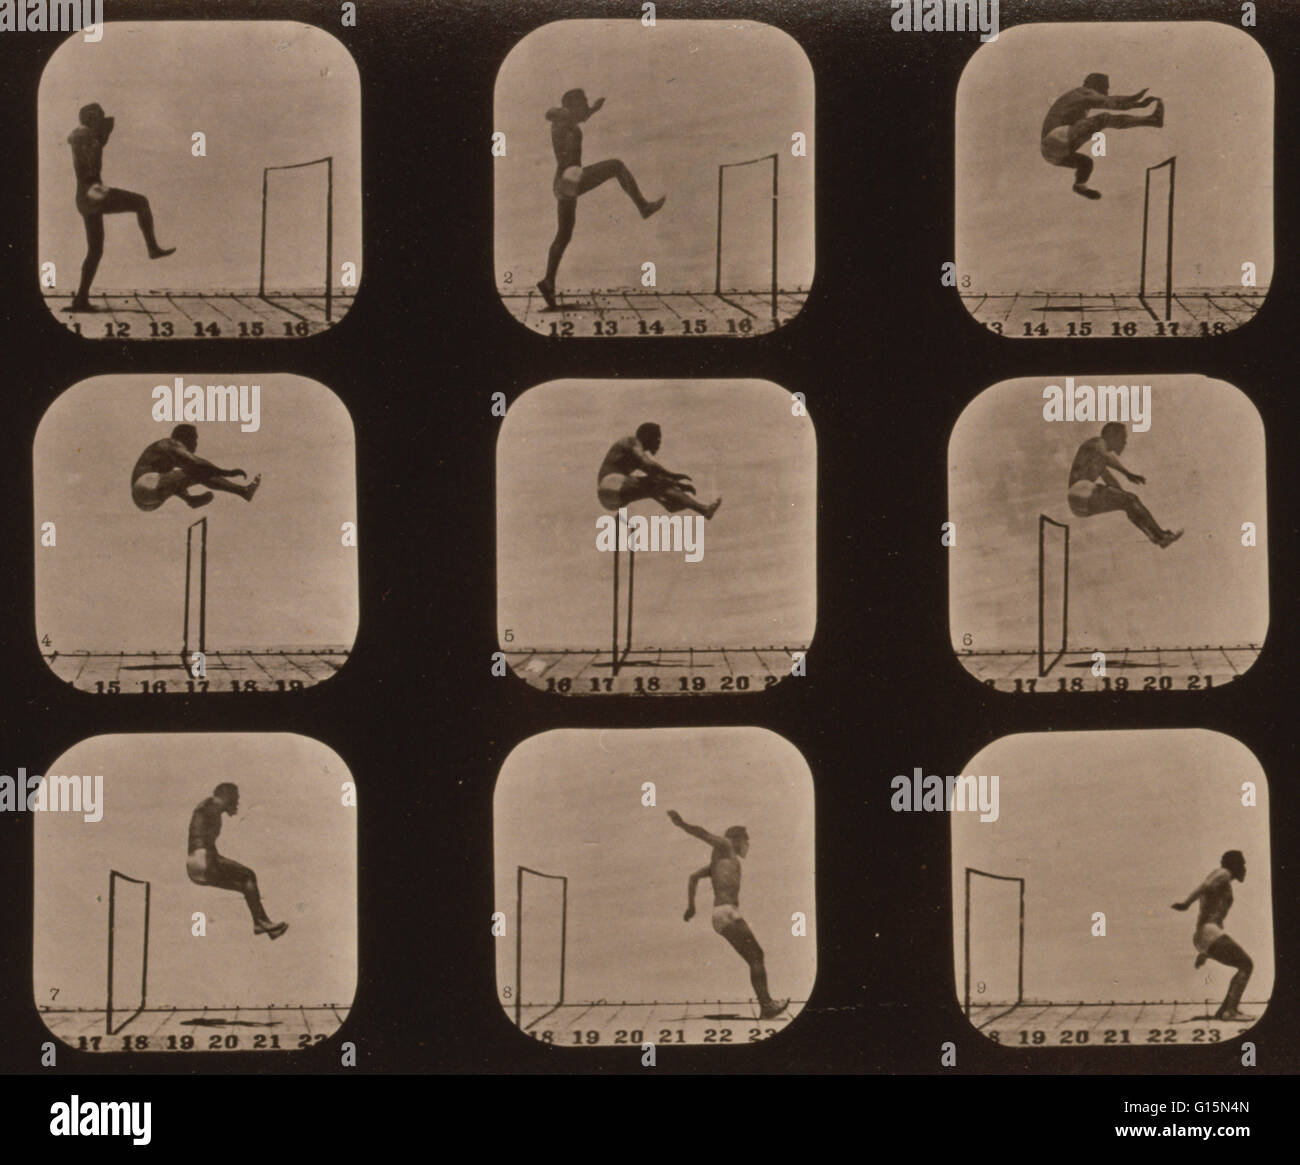 Muybridge locomozione umana, uomo saltando ostacoli, 1881. Fotografia mostra 9 immagini consecutive di un uomo saltando su un ostacolo. James Eadweard Muybridge (9 aprile 1830 - 8 Maggio 1904) era un fotografo inglese importante per il suo lavoro pionieristico in photographi Foto Stock